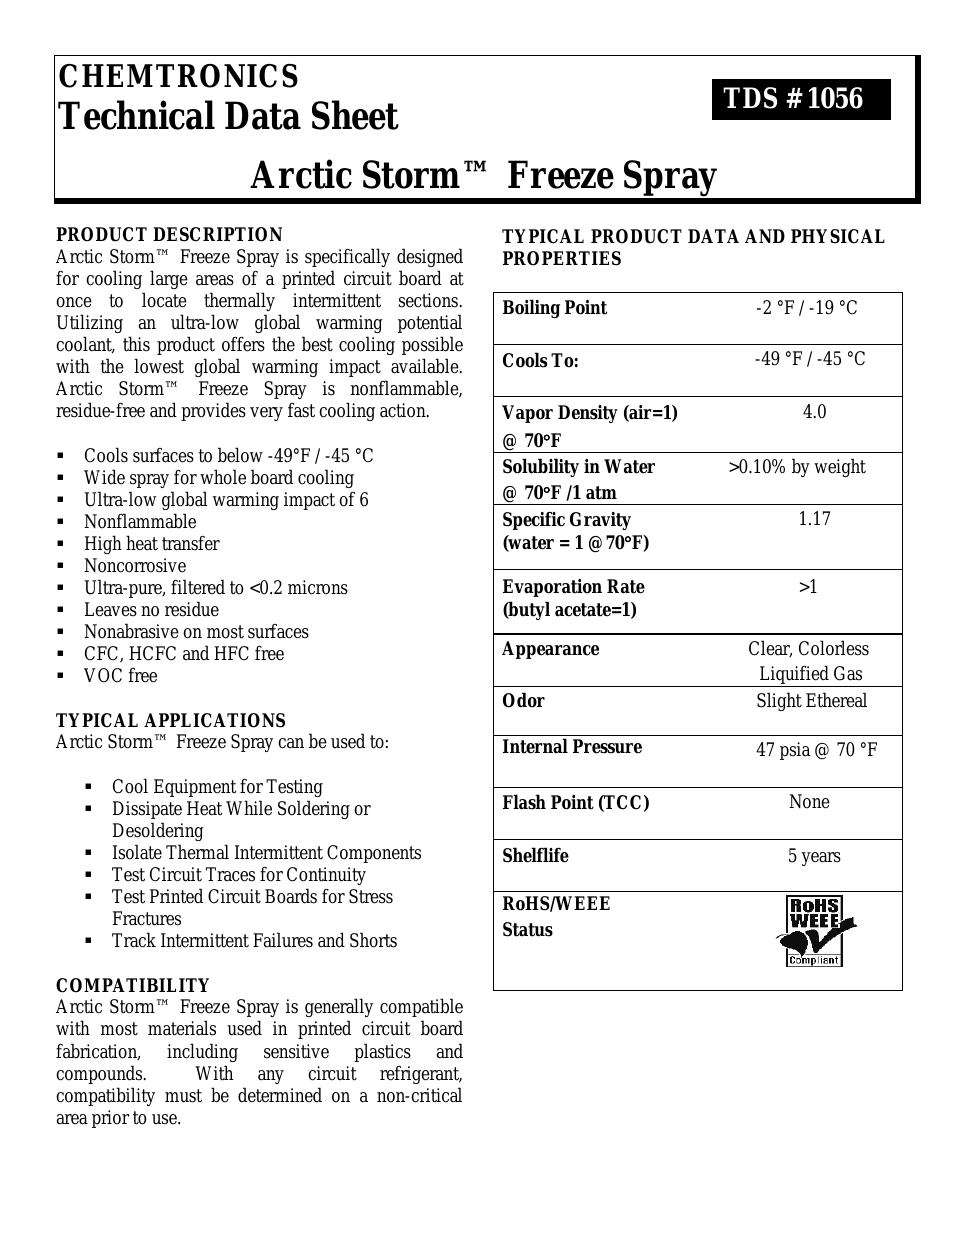 Arctic Storm ES1056